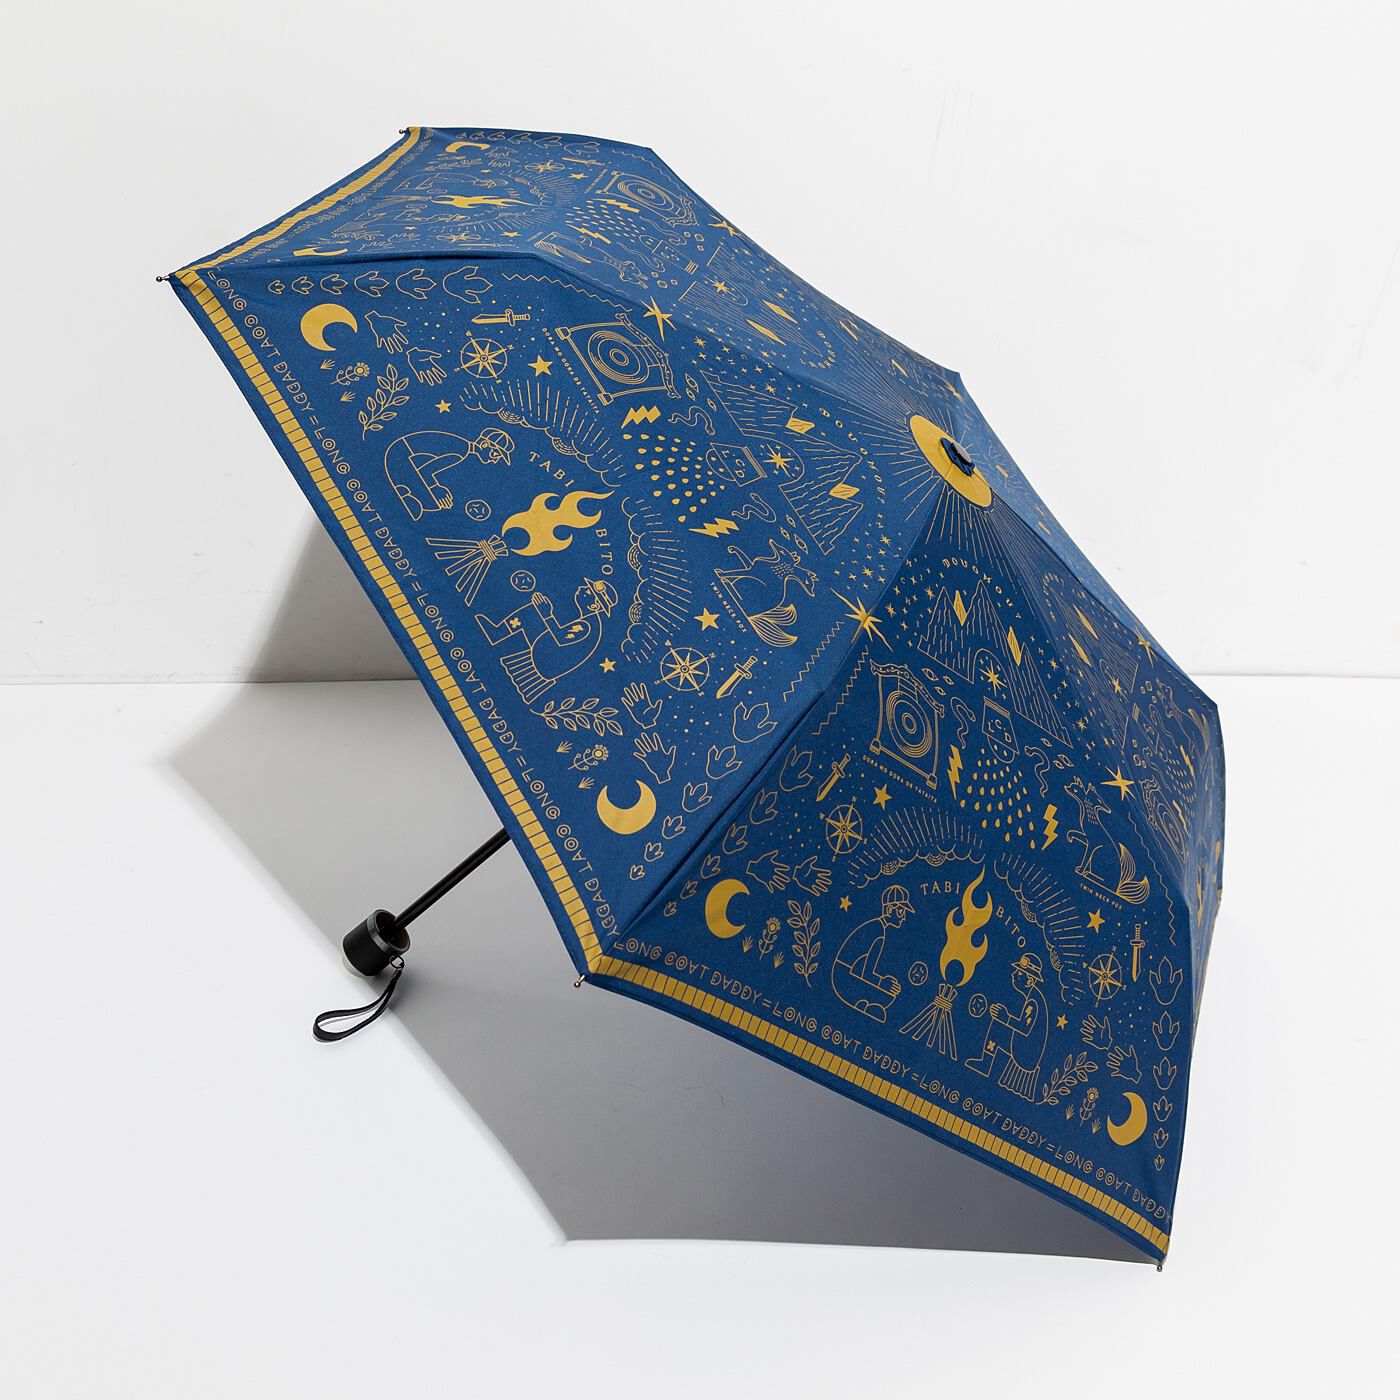 フェリシモの雑貨 Kraso|よしもとコラボ　ロングコートダディ 収納もらくちん 旅人気分の晴雨兼用折りたたみ傘|ぐるっと全面にプリント入り。